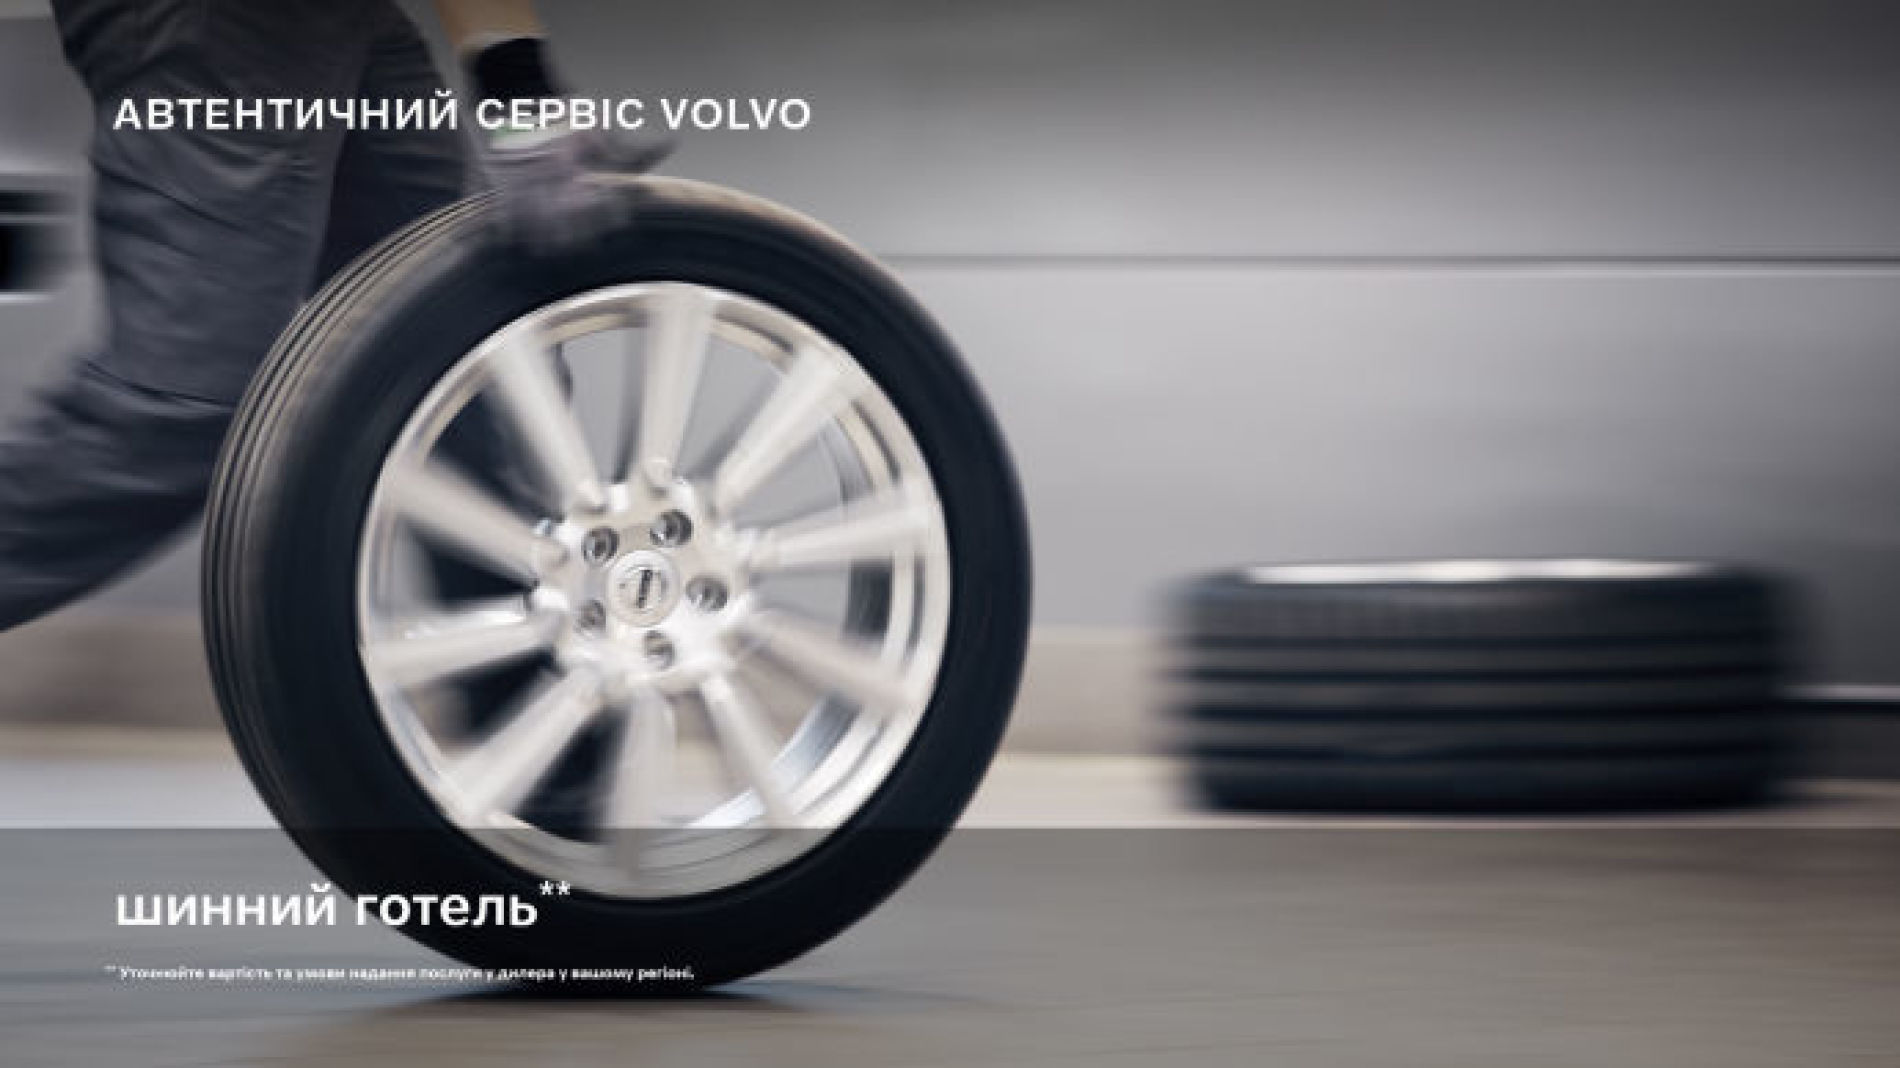 Надійне збереження шин Вашого Volvo